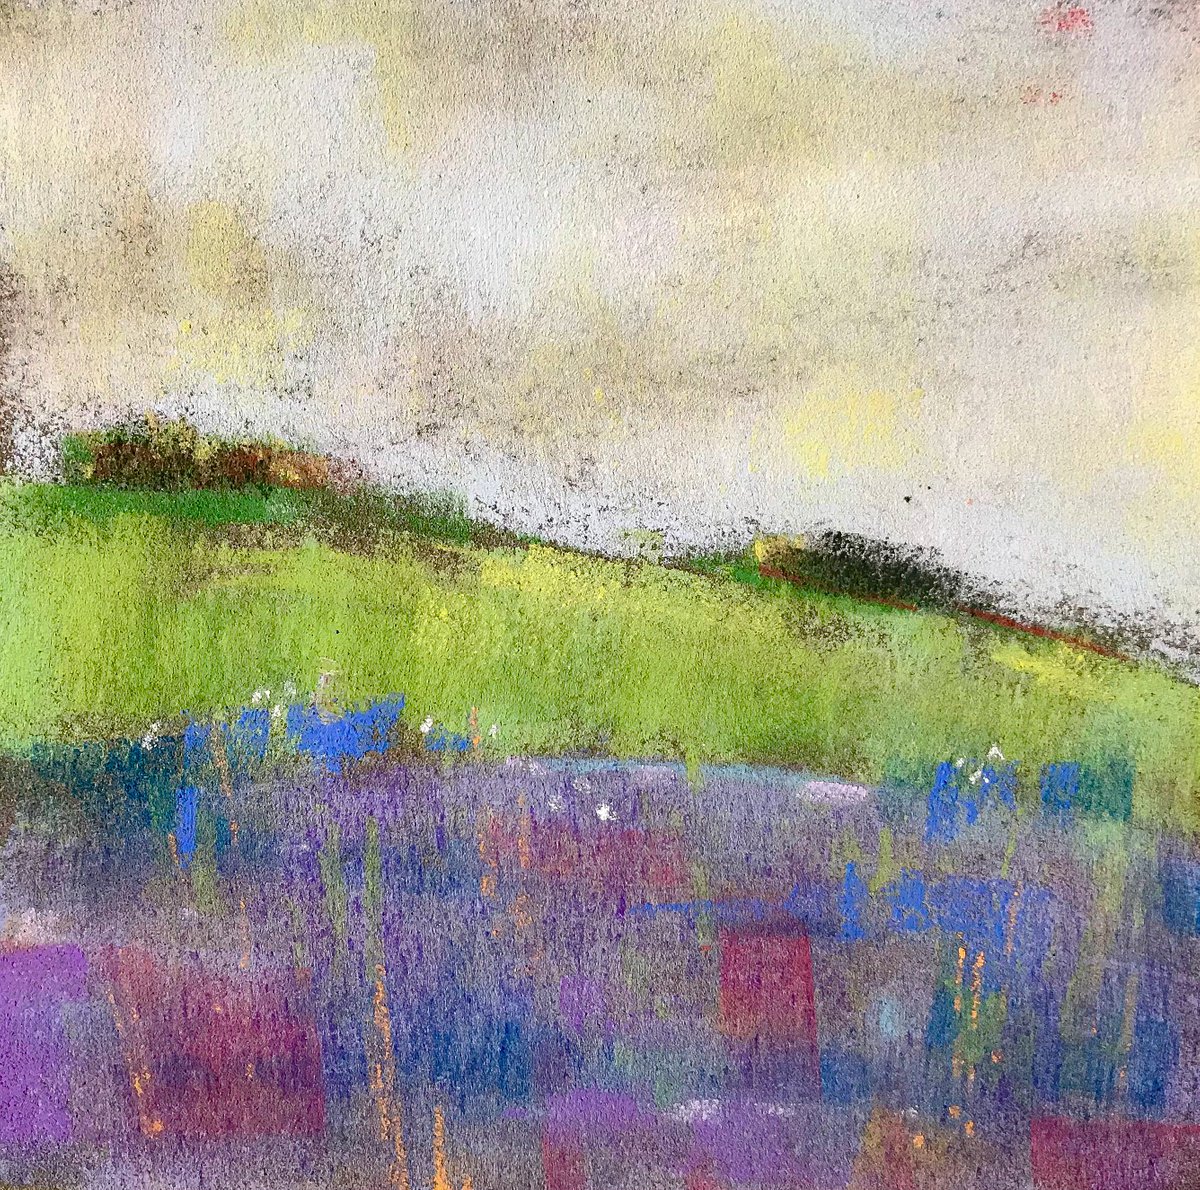 meadow.2 by Deke Wightman